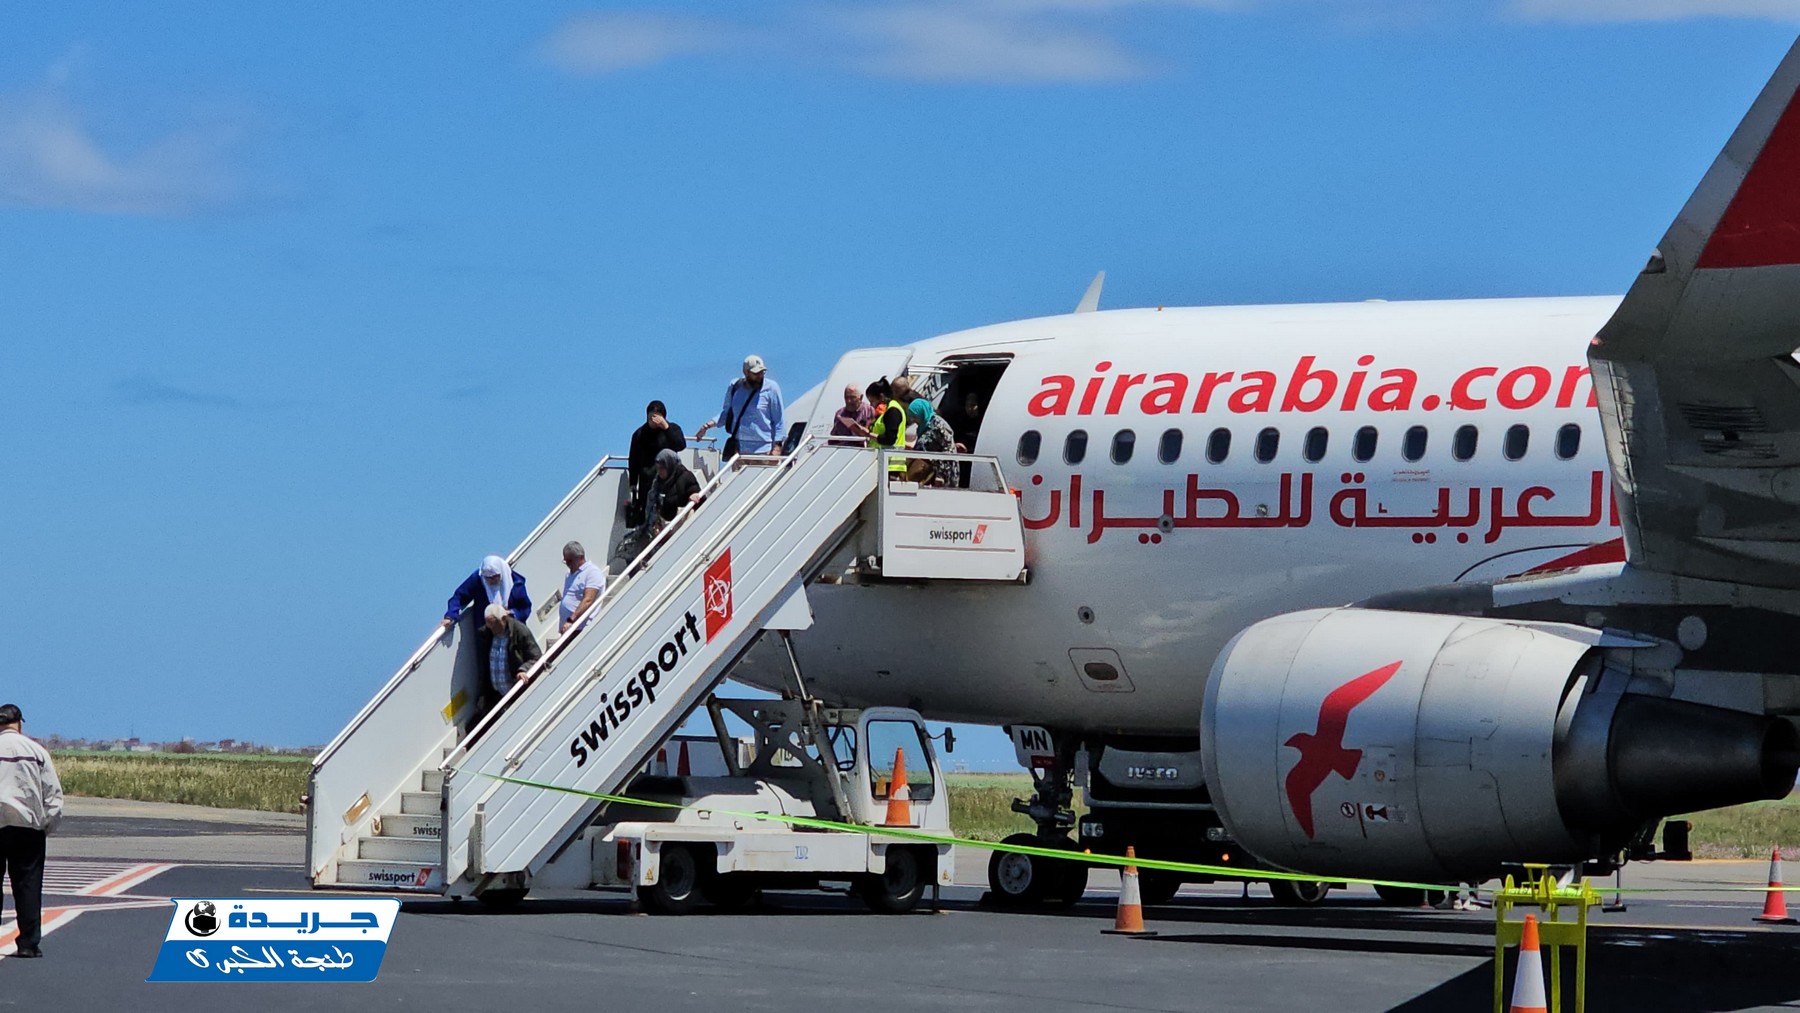 خط جوي جديد لشركة العربية للطيران يربط تطوان و أمستردام + صور